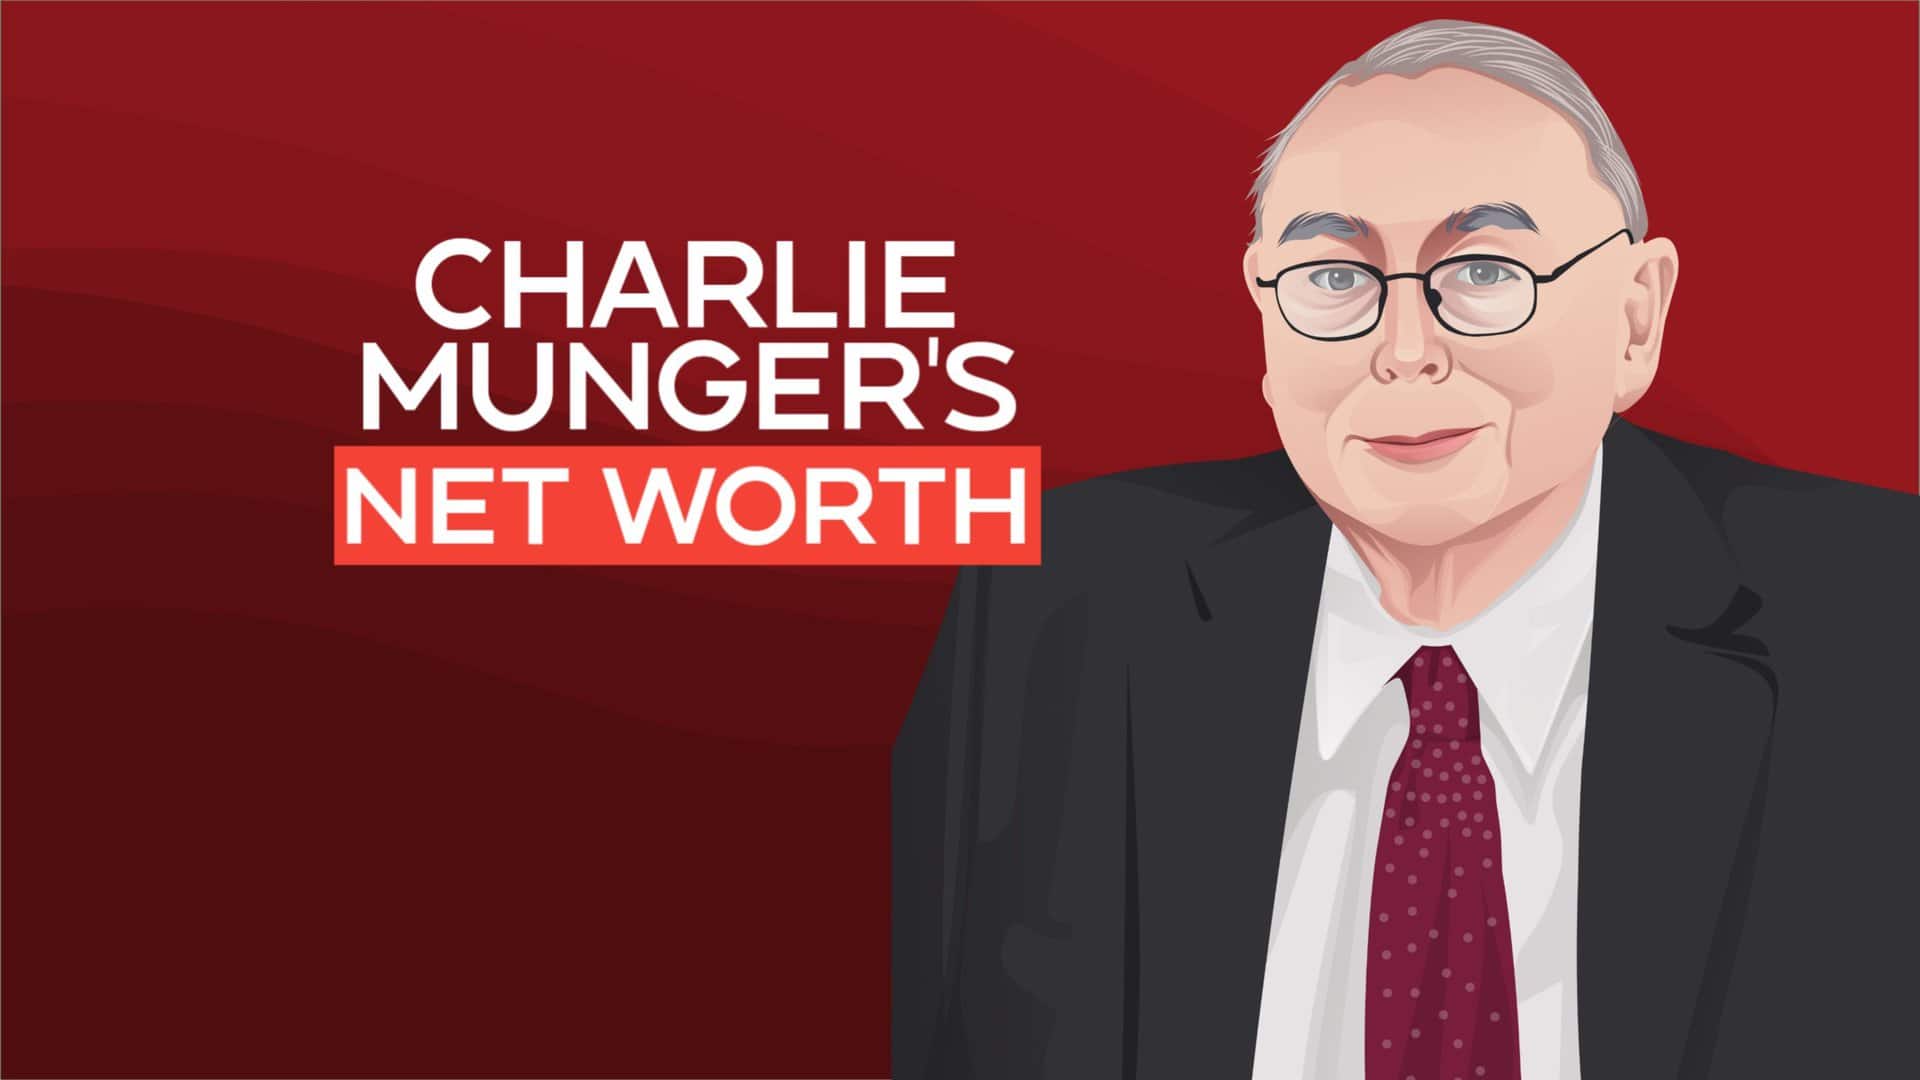 Charlie Munger net worth